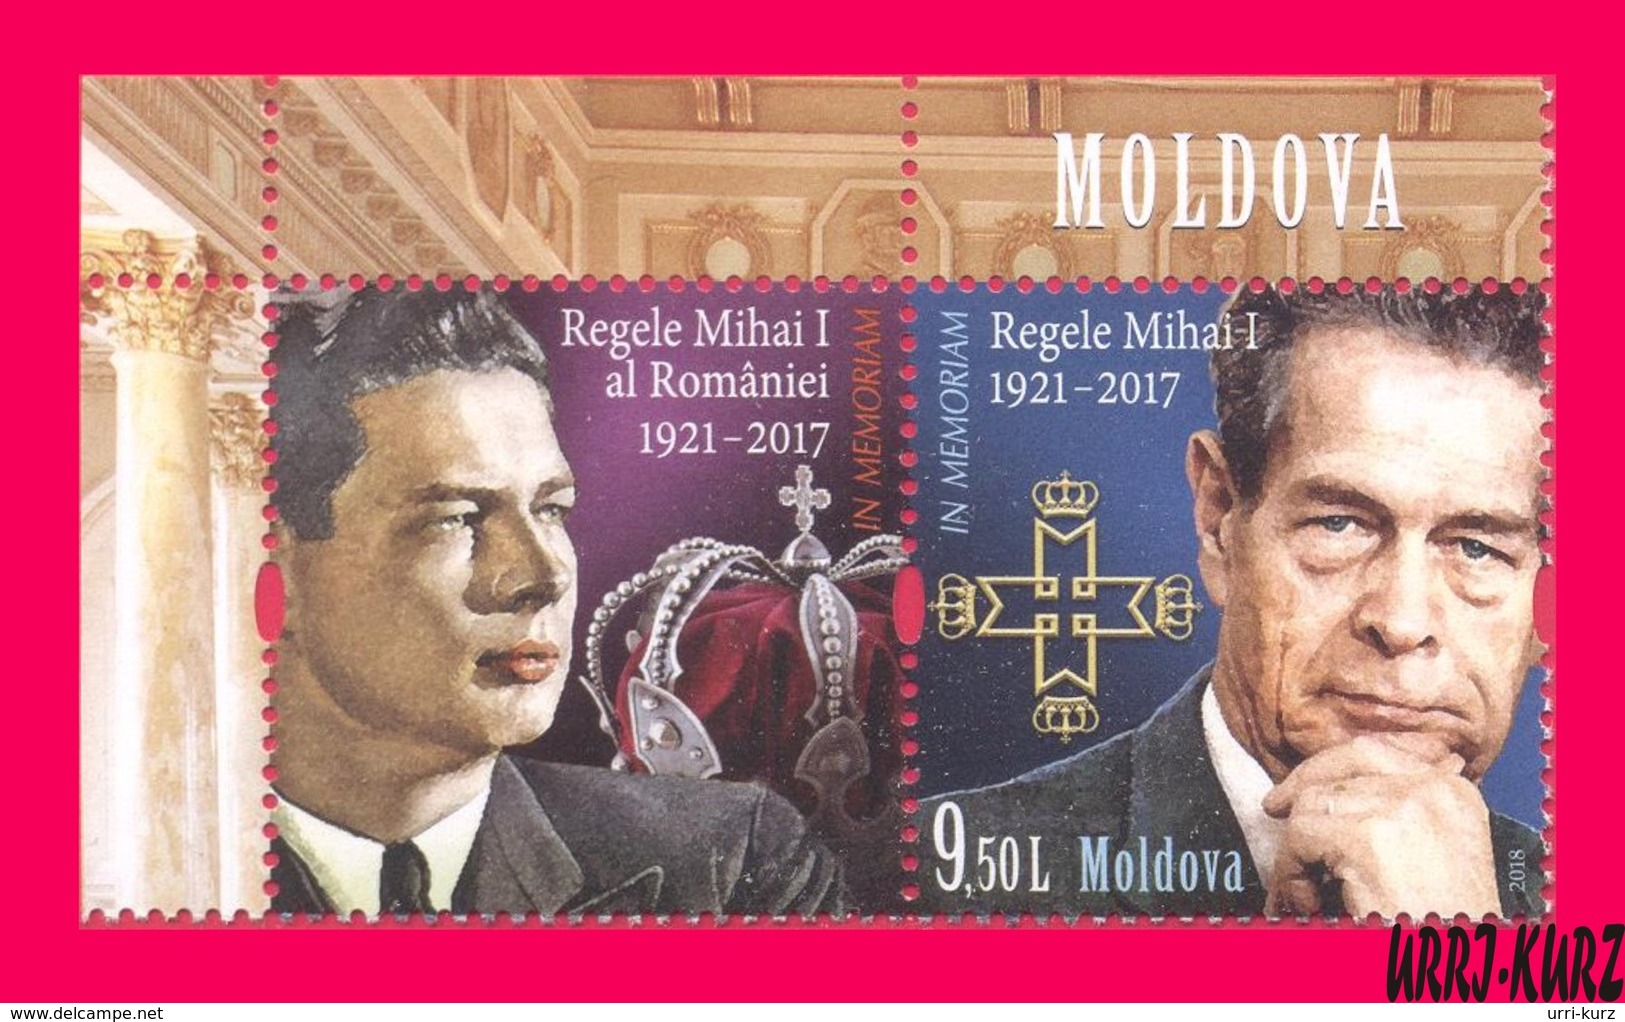 MOLDOVA 2018 Famous People Personalities Royalty Royals Last King Of Romania Mihai I (1921 – 2017) 1v+ Mi1072 Sc1008 MNH - Moldova